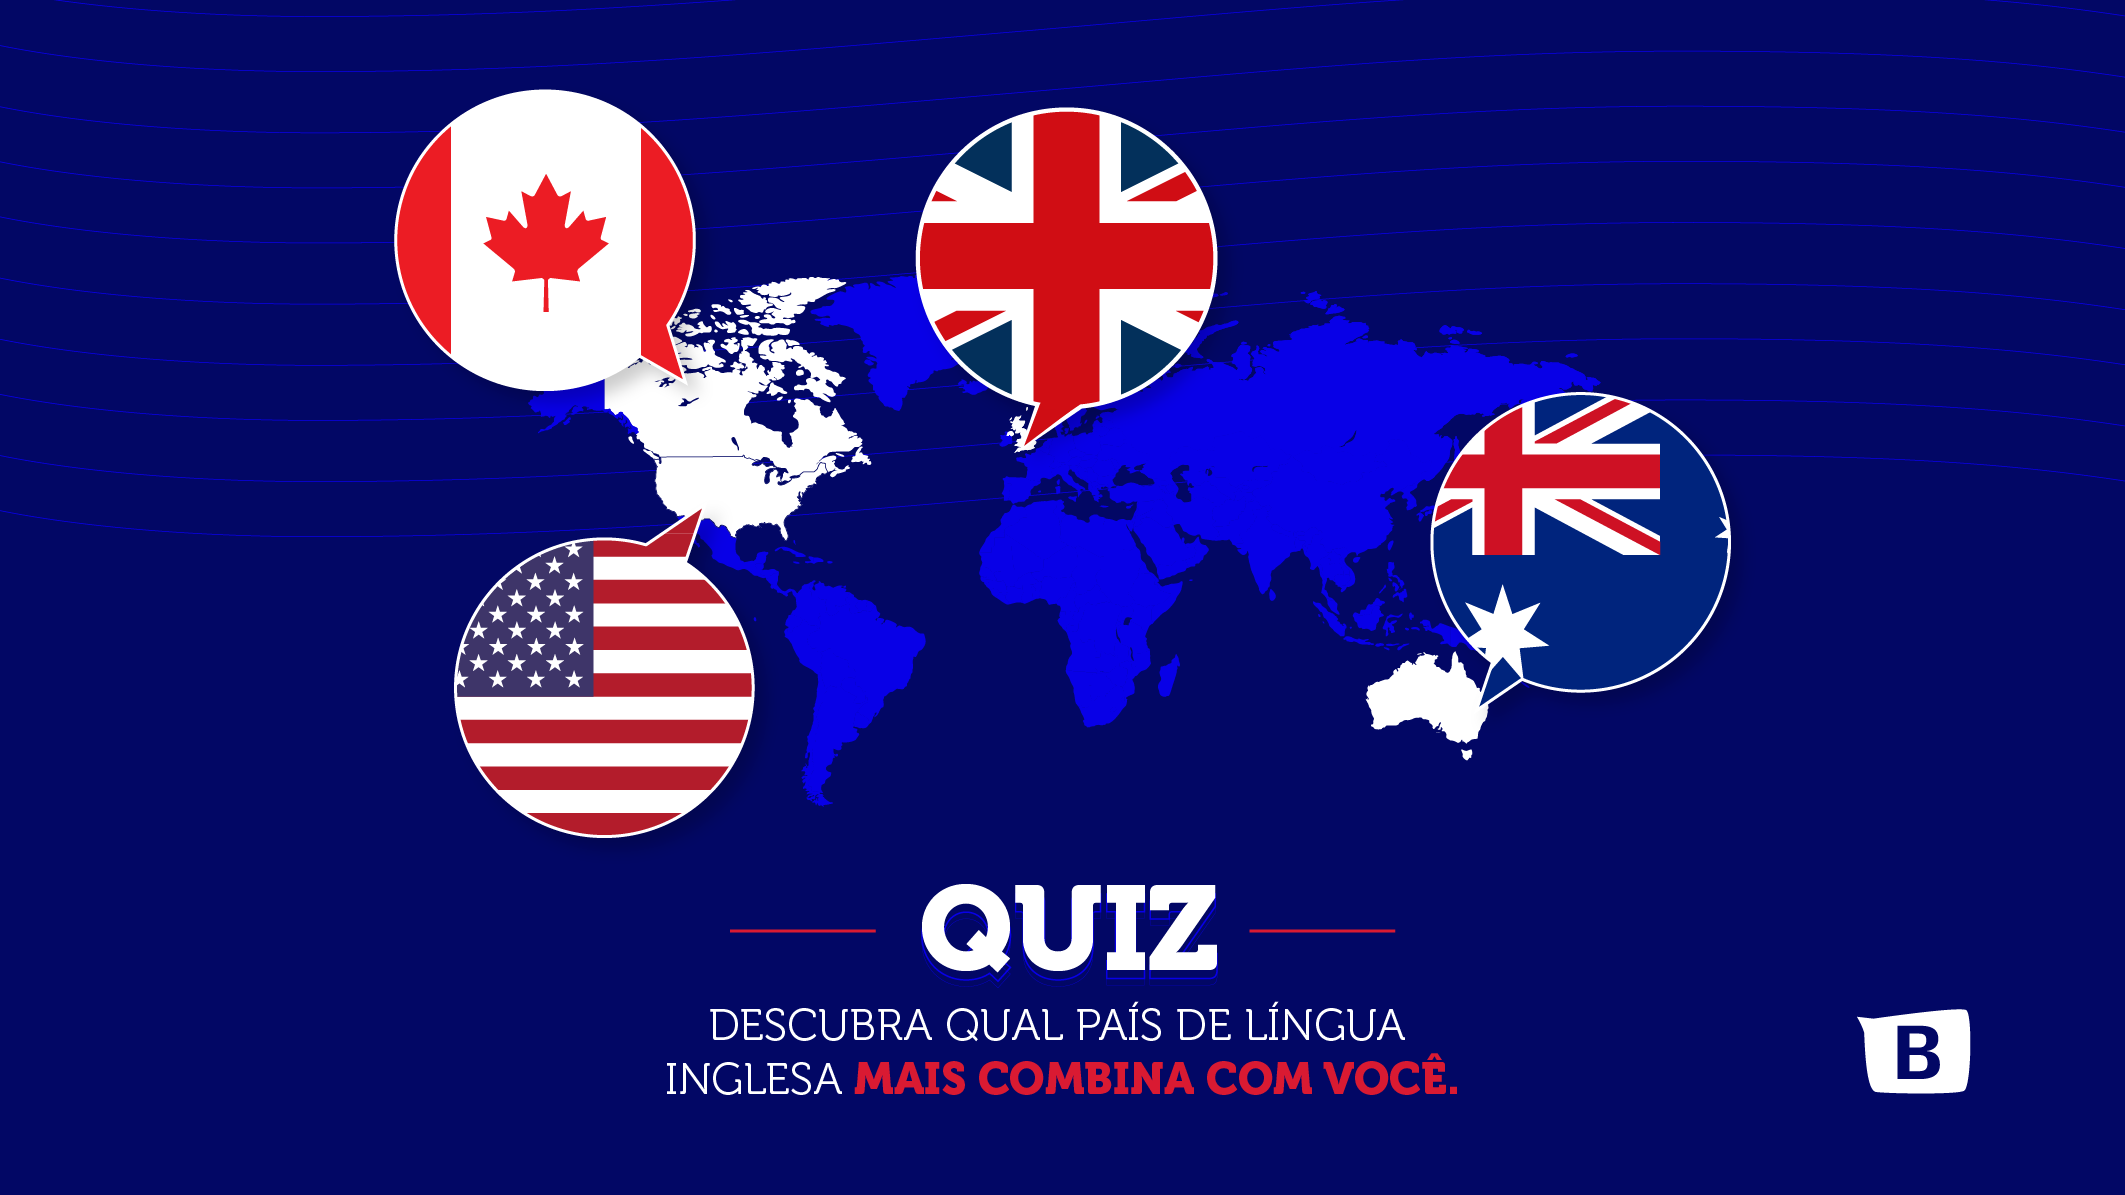 Descubra qual país de língua inglesa mais combina com você. 2